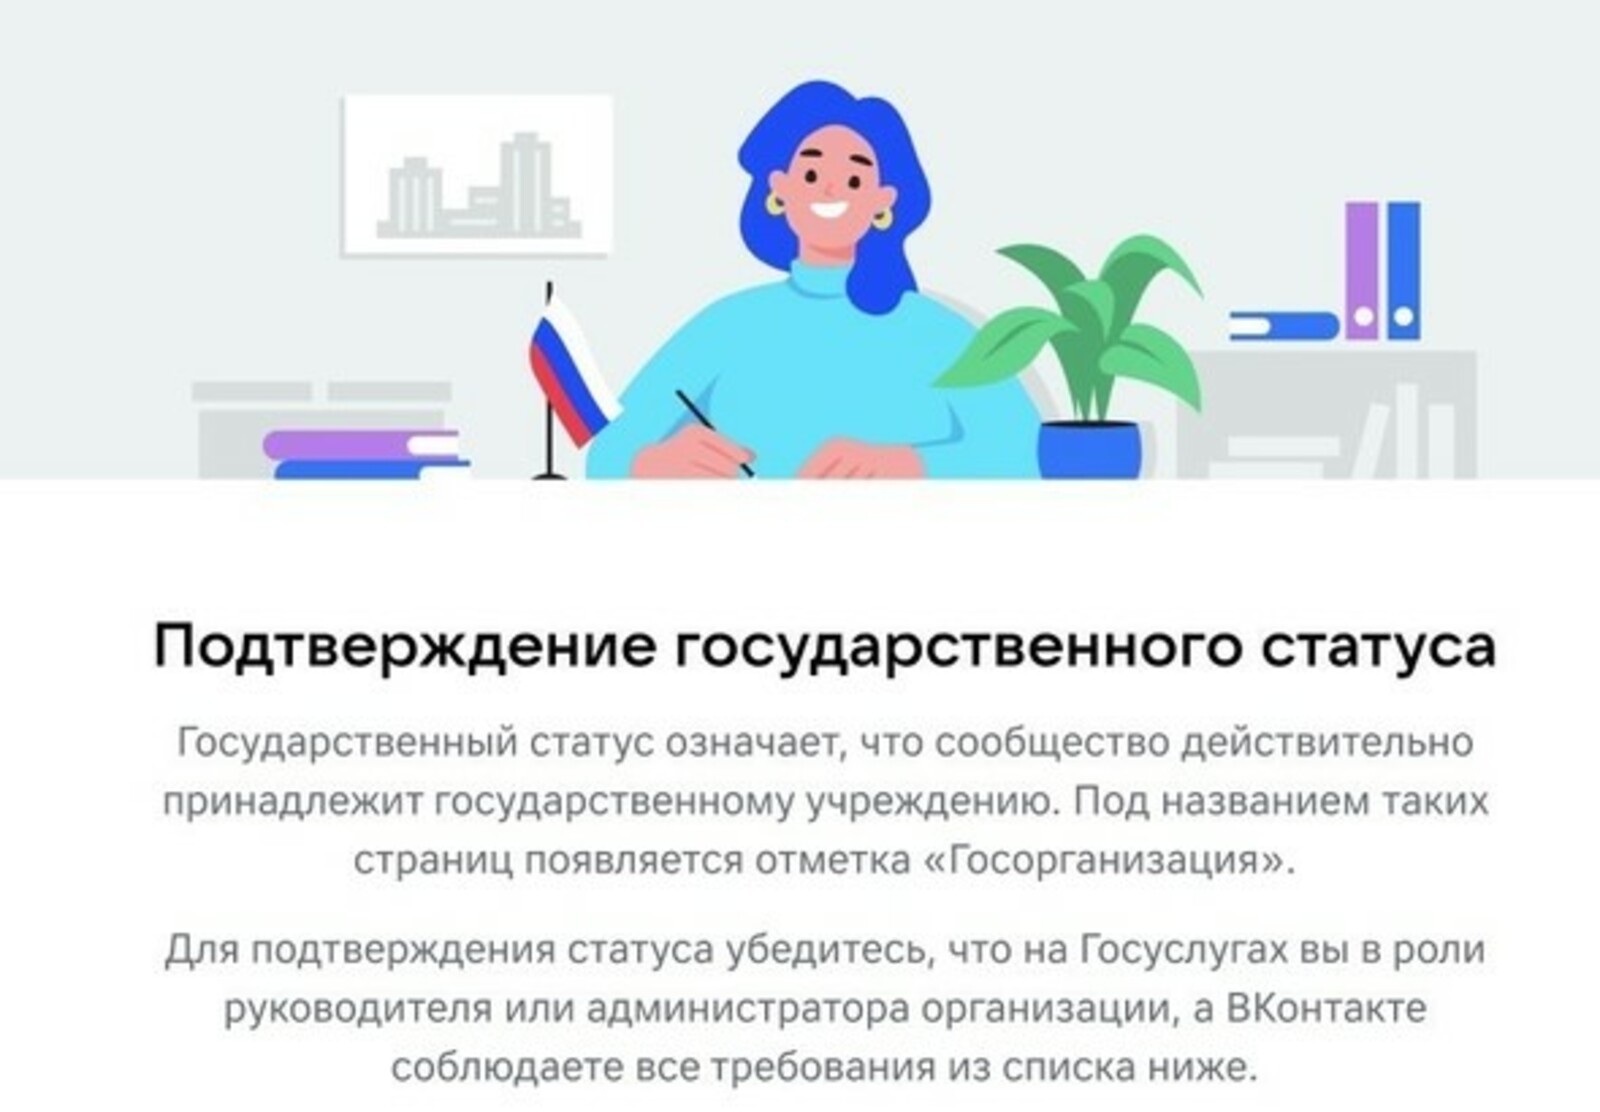 Статус госорганизации в соцсетях подтвердили 65 медучреждений из Башкортостана